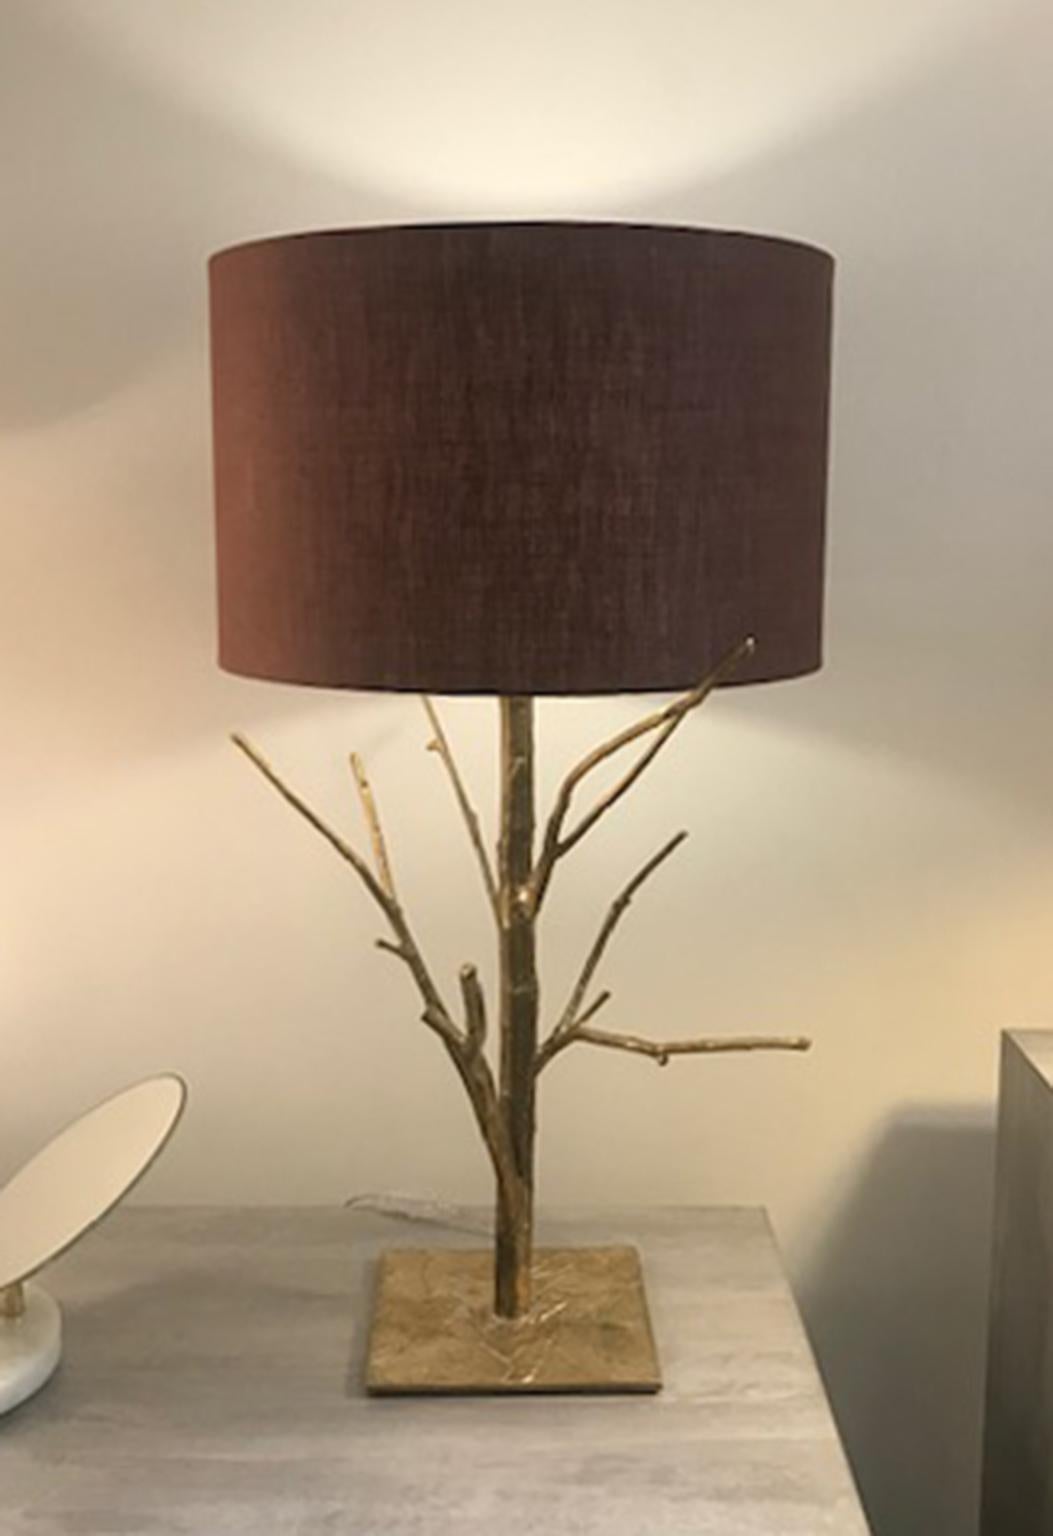 Galho Tischlampe - Elegante und originelle Lampe aus Bronzeguss.
Elegante und originelle Lampe aus Bronzeguss.
Inspiriert von der Natur werden die Zweige direkt von den gefallenen Ästen der Bäume geblasen.
Unregelmäßigkeiten und Branding in der